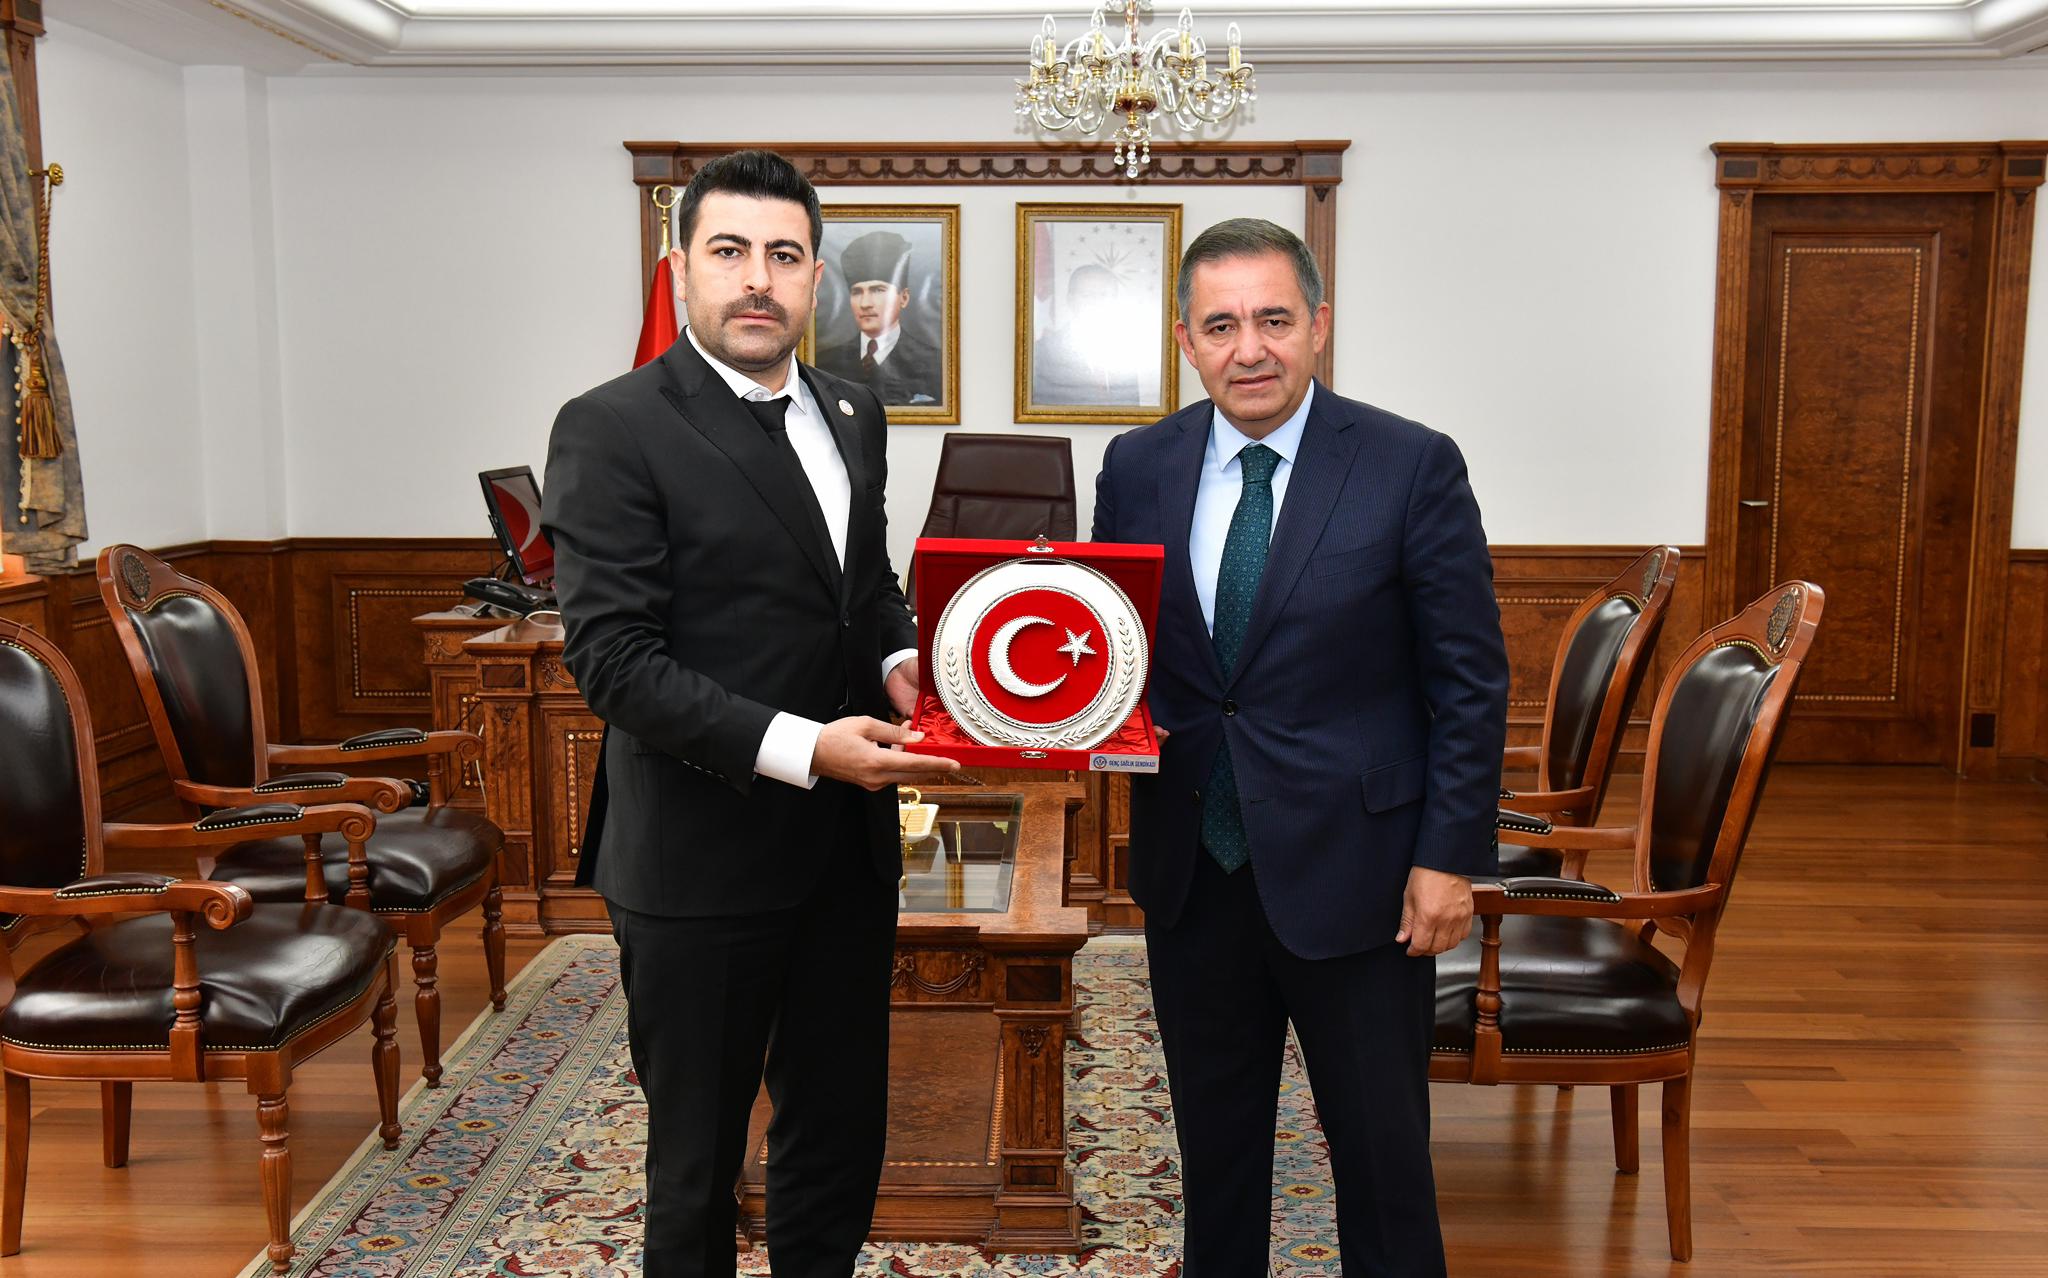 Genel Başkanı Osman Kaya ve beraberindeki heyet, Kırşehir Valisi Hüdayar Mete BUHARA’ya ziyarette bulundu